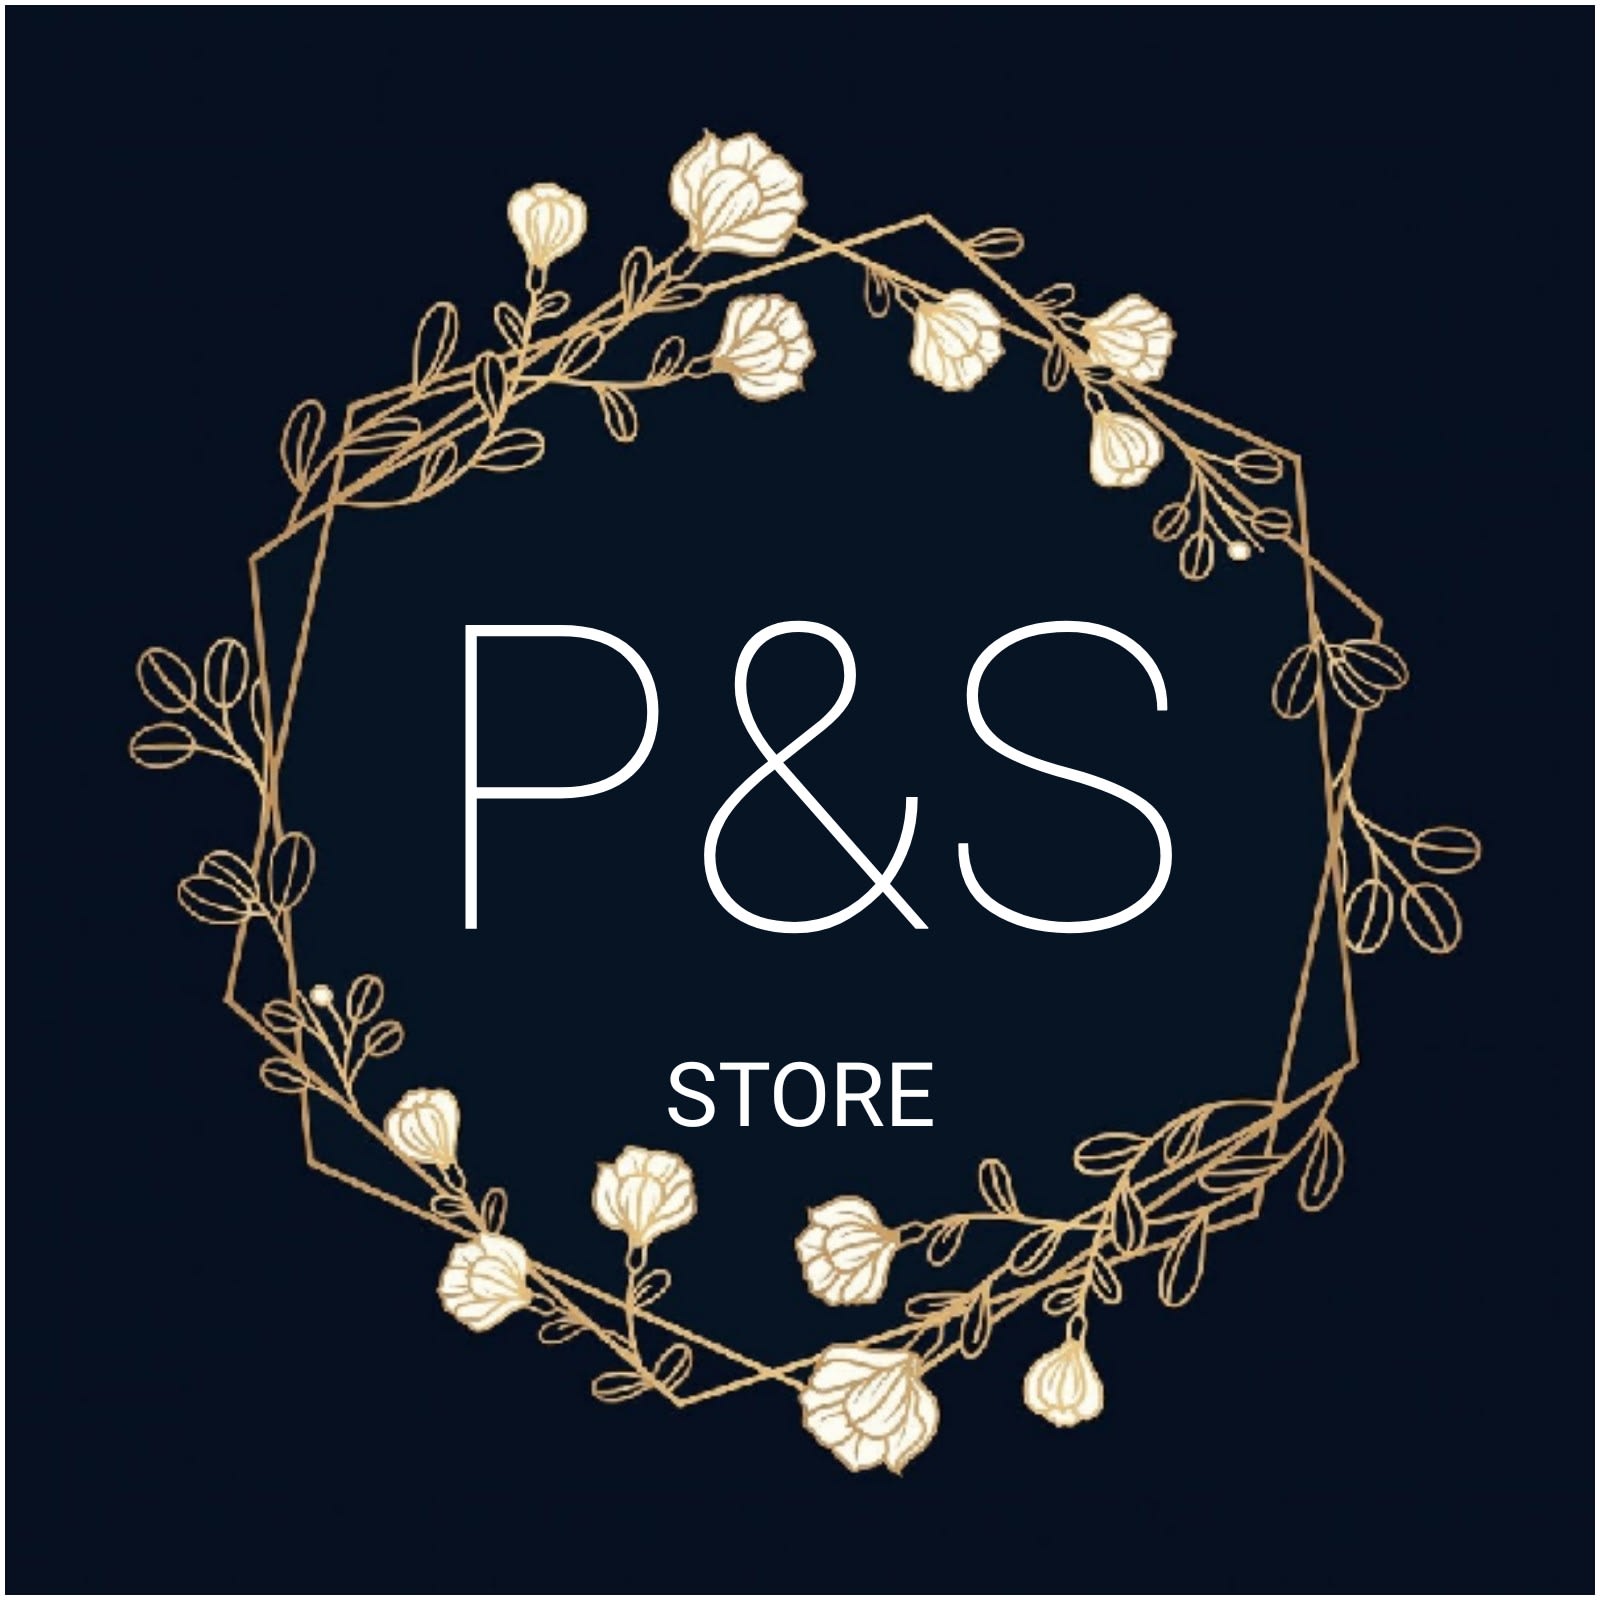 P&S Store